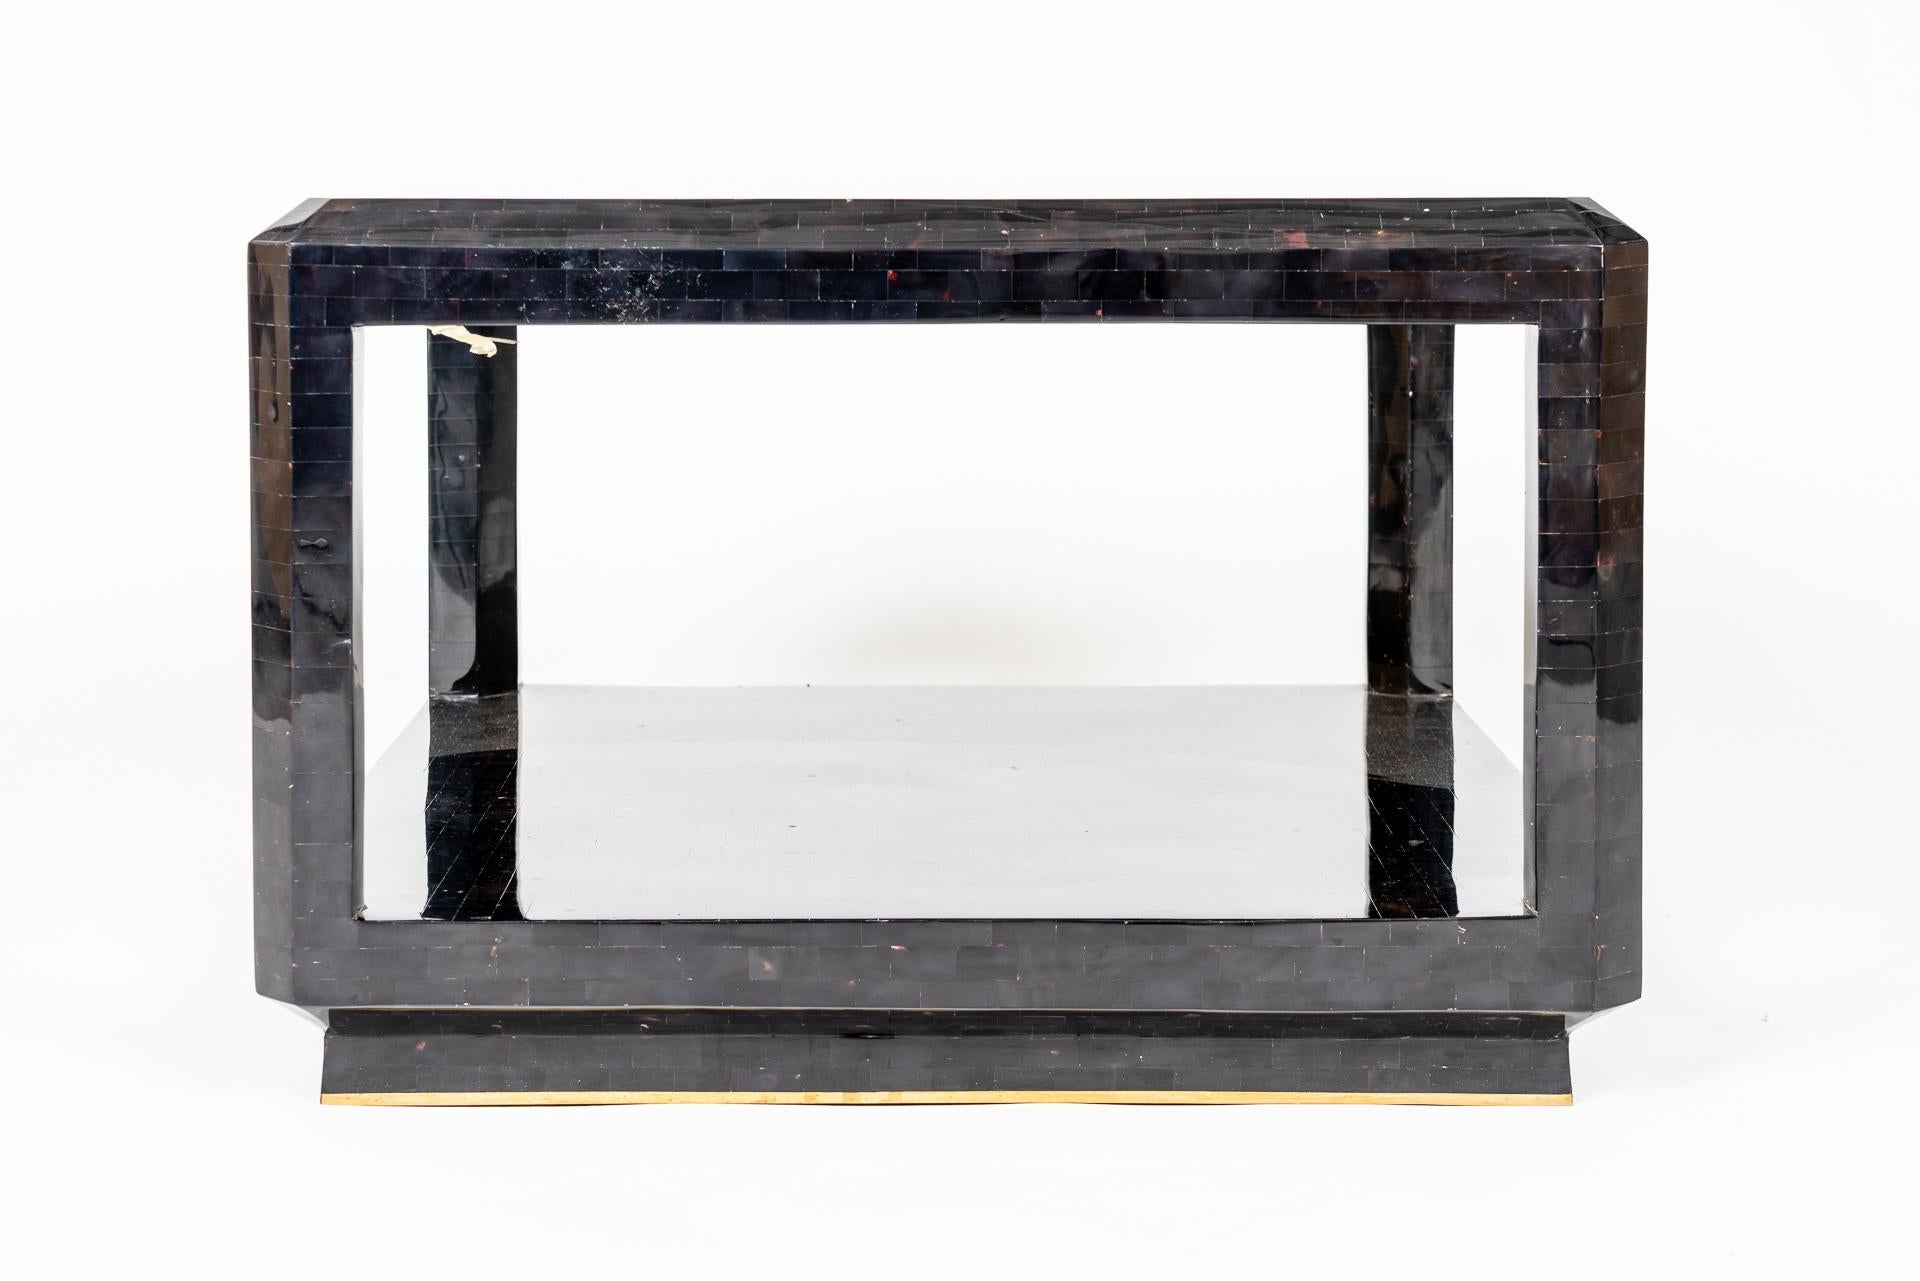 Cette magnifique table d'appoint manufacturée de Maitland Smith montre le travail délicat avec des matériaux comme la mosaïque de coquillages. La structure est recouverte de petites pièces rectangulaires de mosaïque de coquillages de couleur foncée